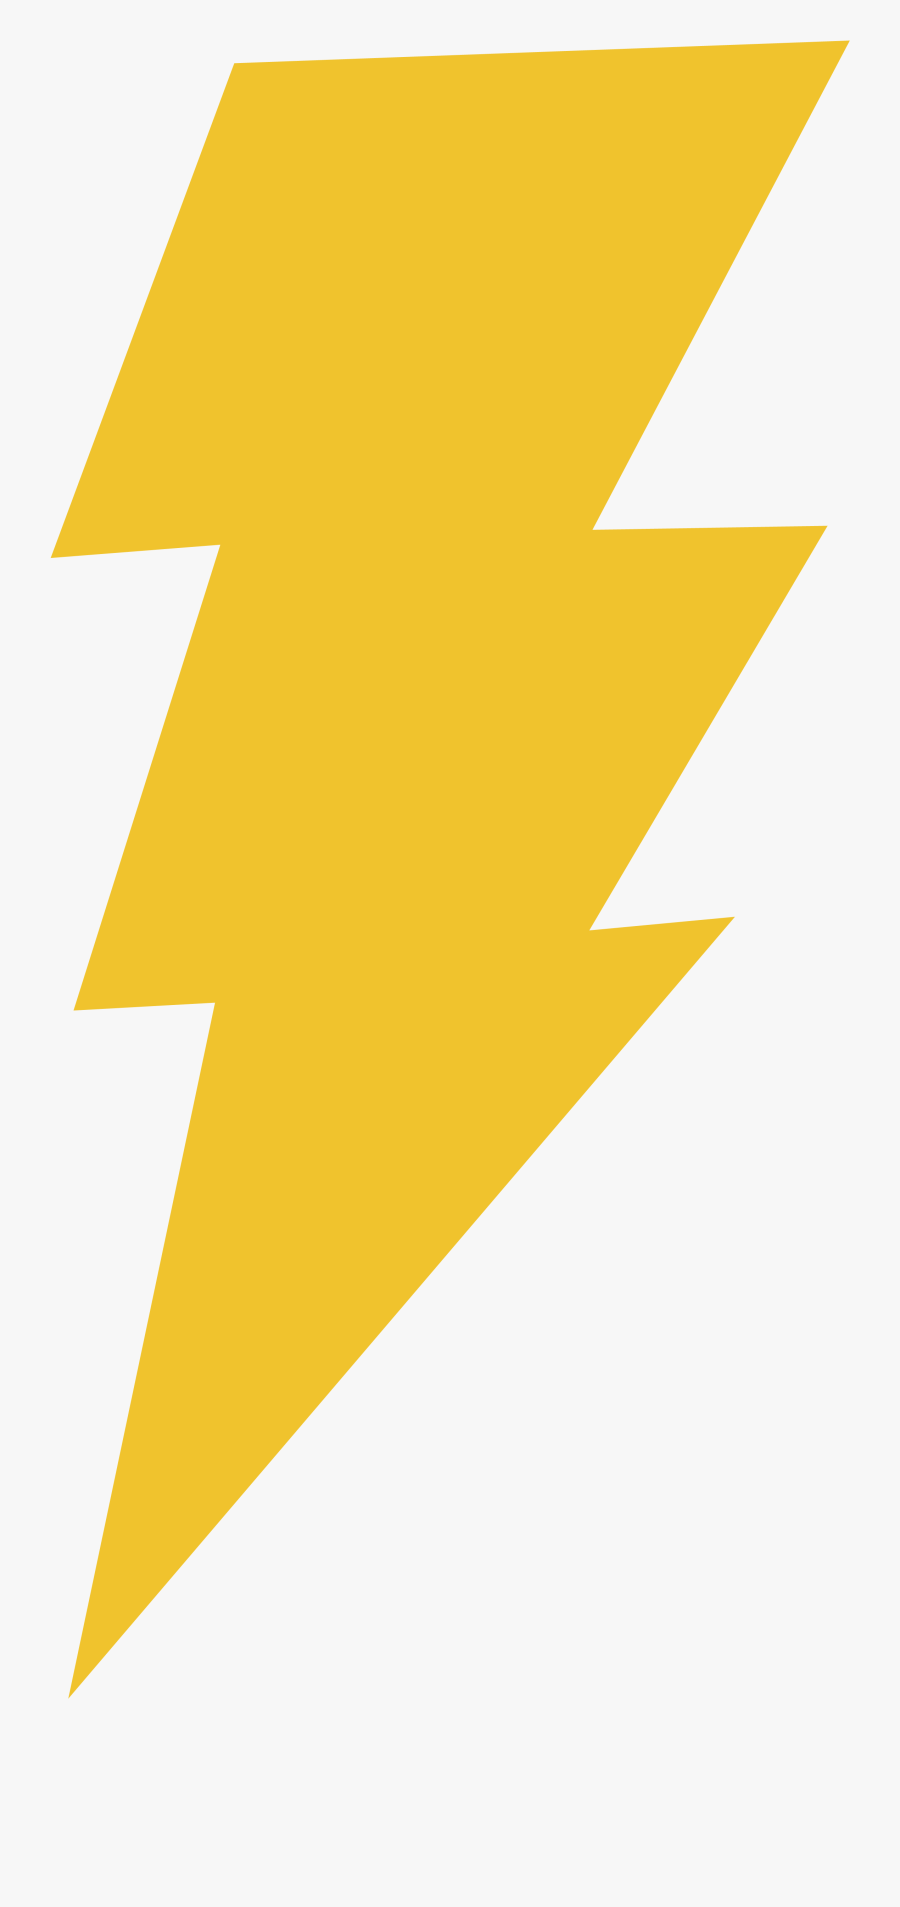 Harry Potter Lightning Bolt Png - Shazam Dc Logo Png, Transparent Clipart